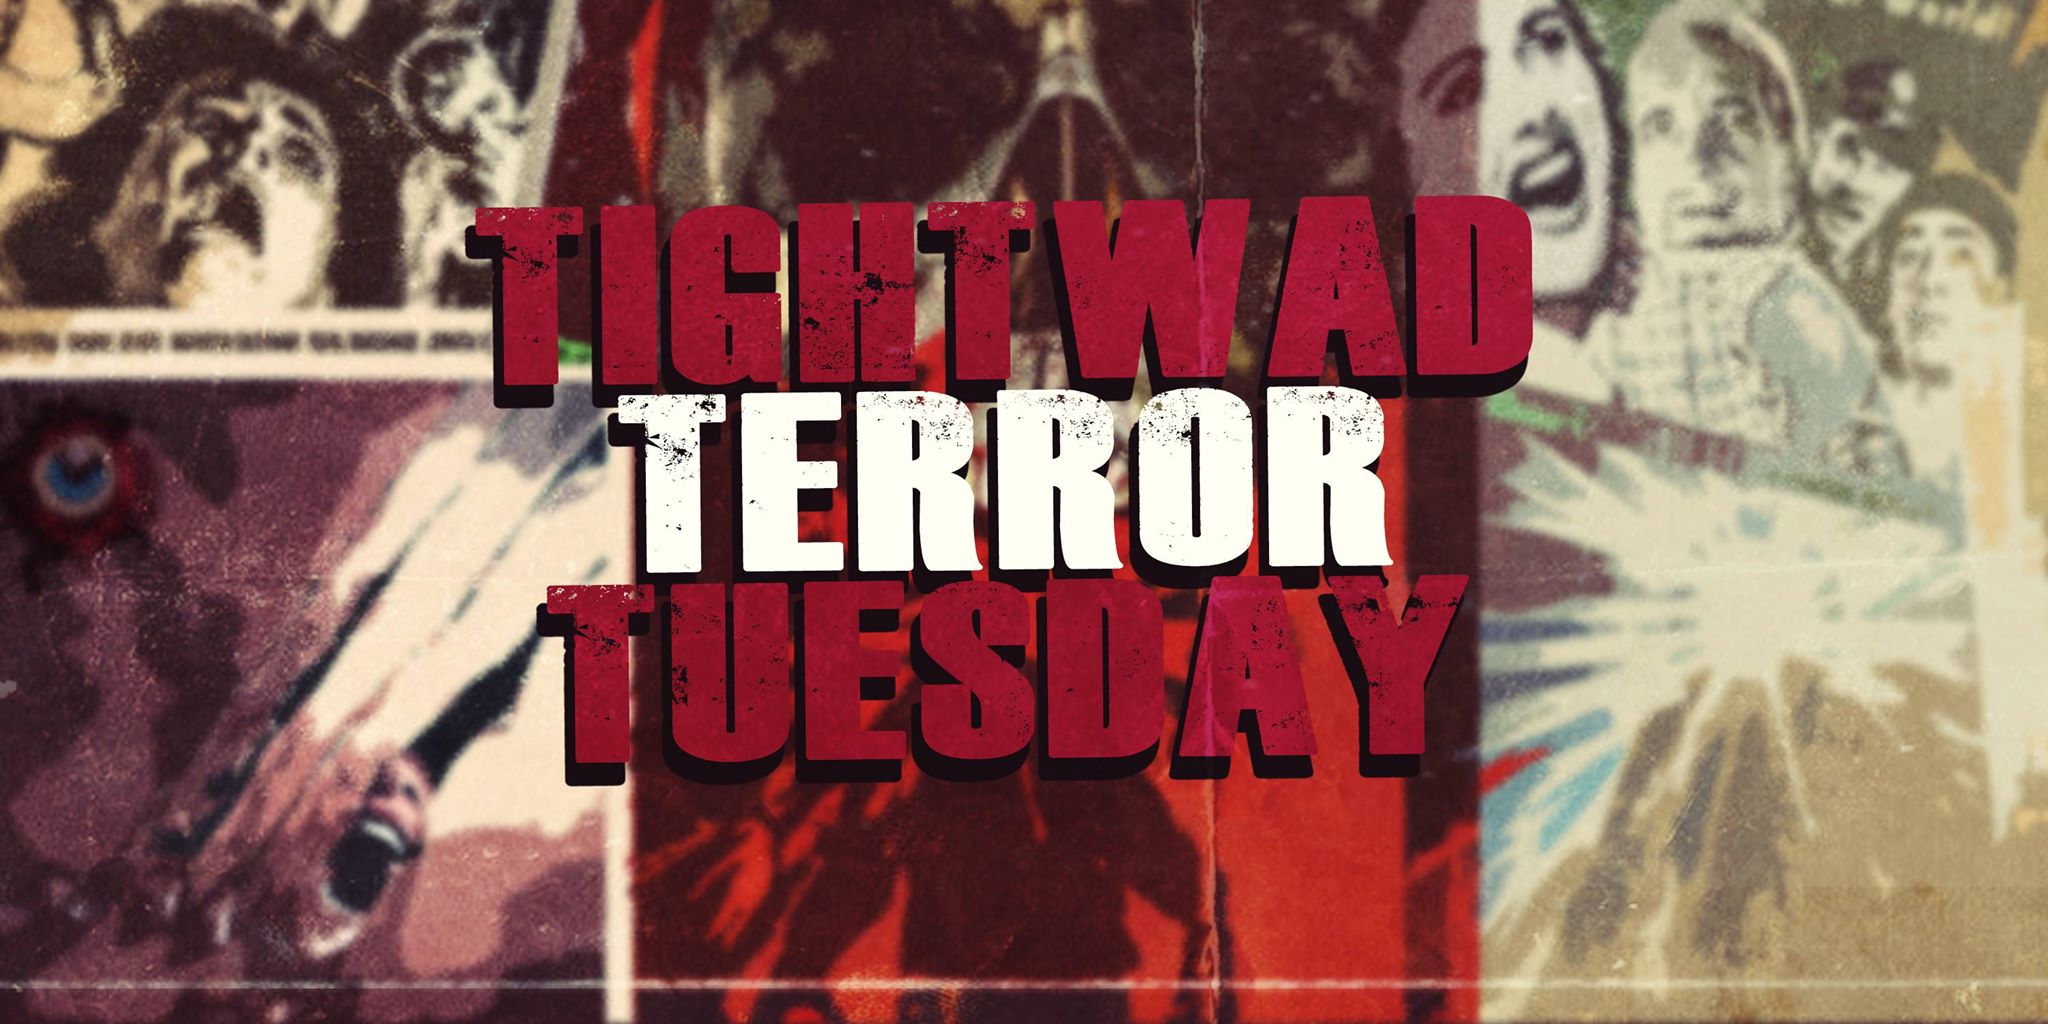 Dimàirt Terror Tightwad - Filmichean an-asgaidh